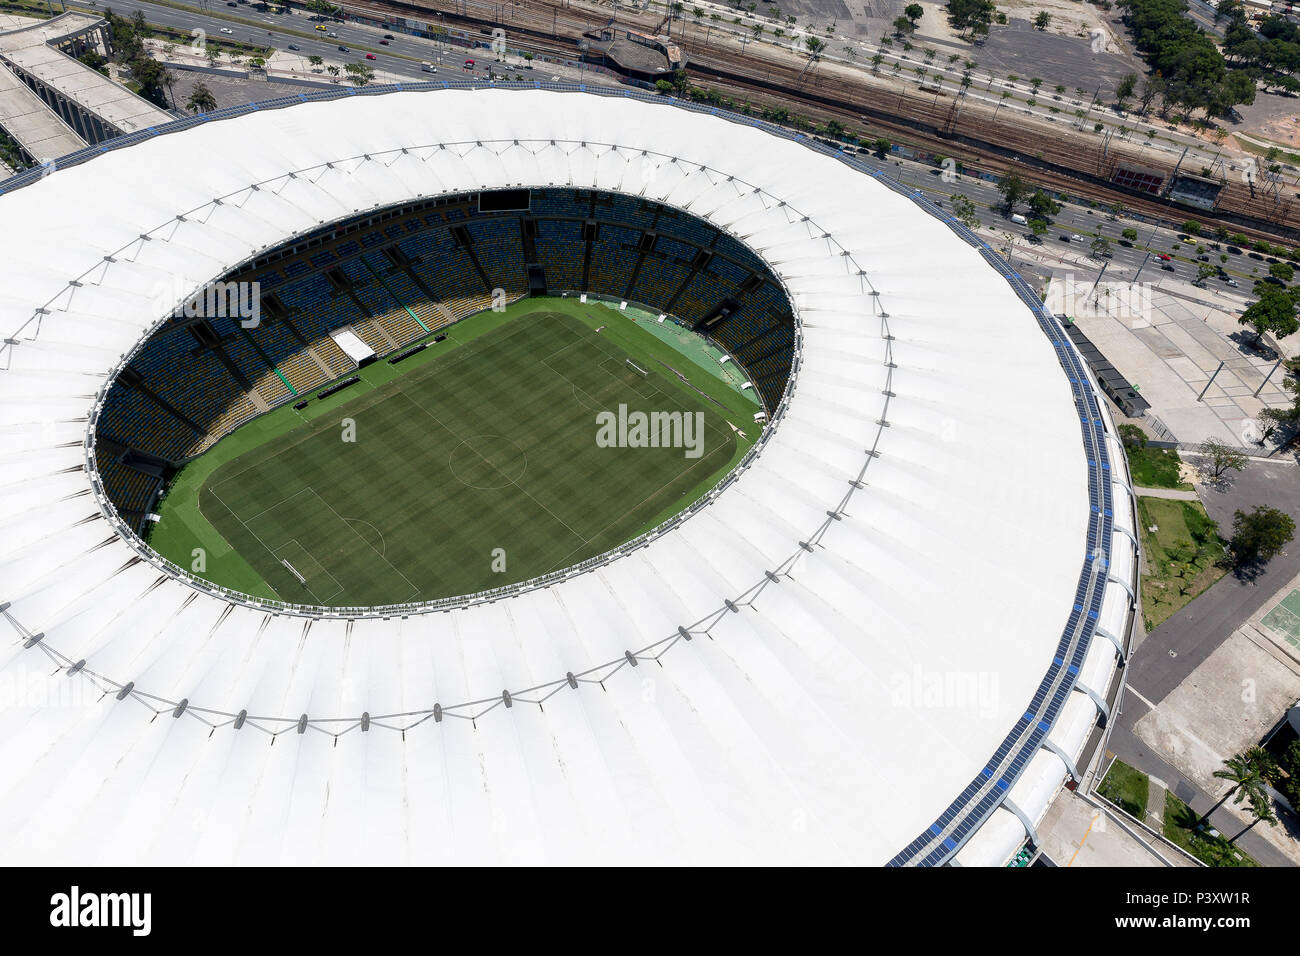 Vista aérea do Estádio Jornalista Mário Filho, Maracana, no Rio de Janeiro. Stock Photo